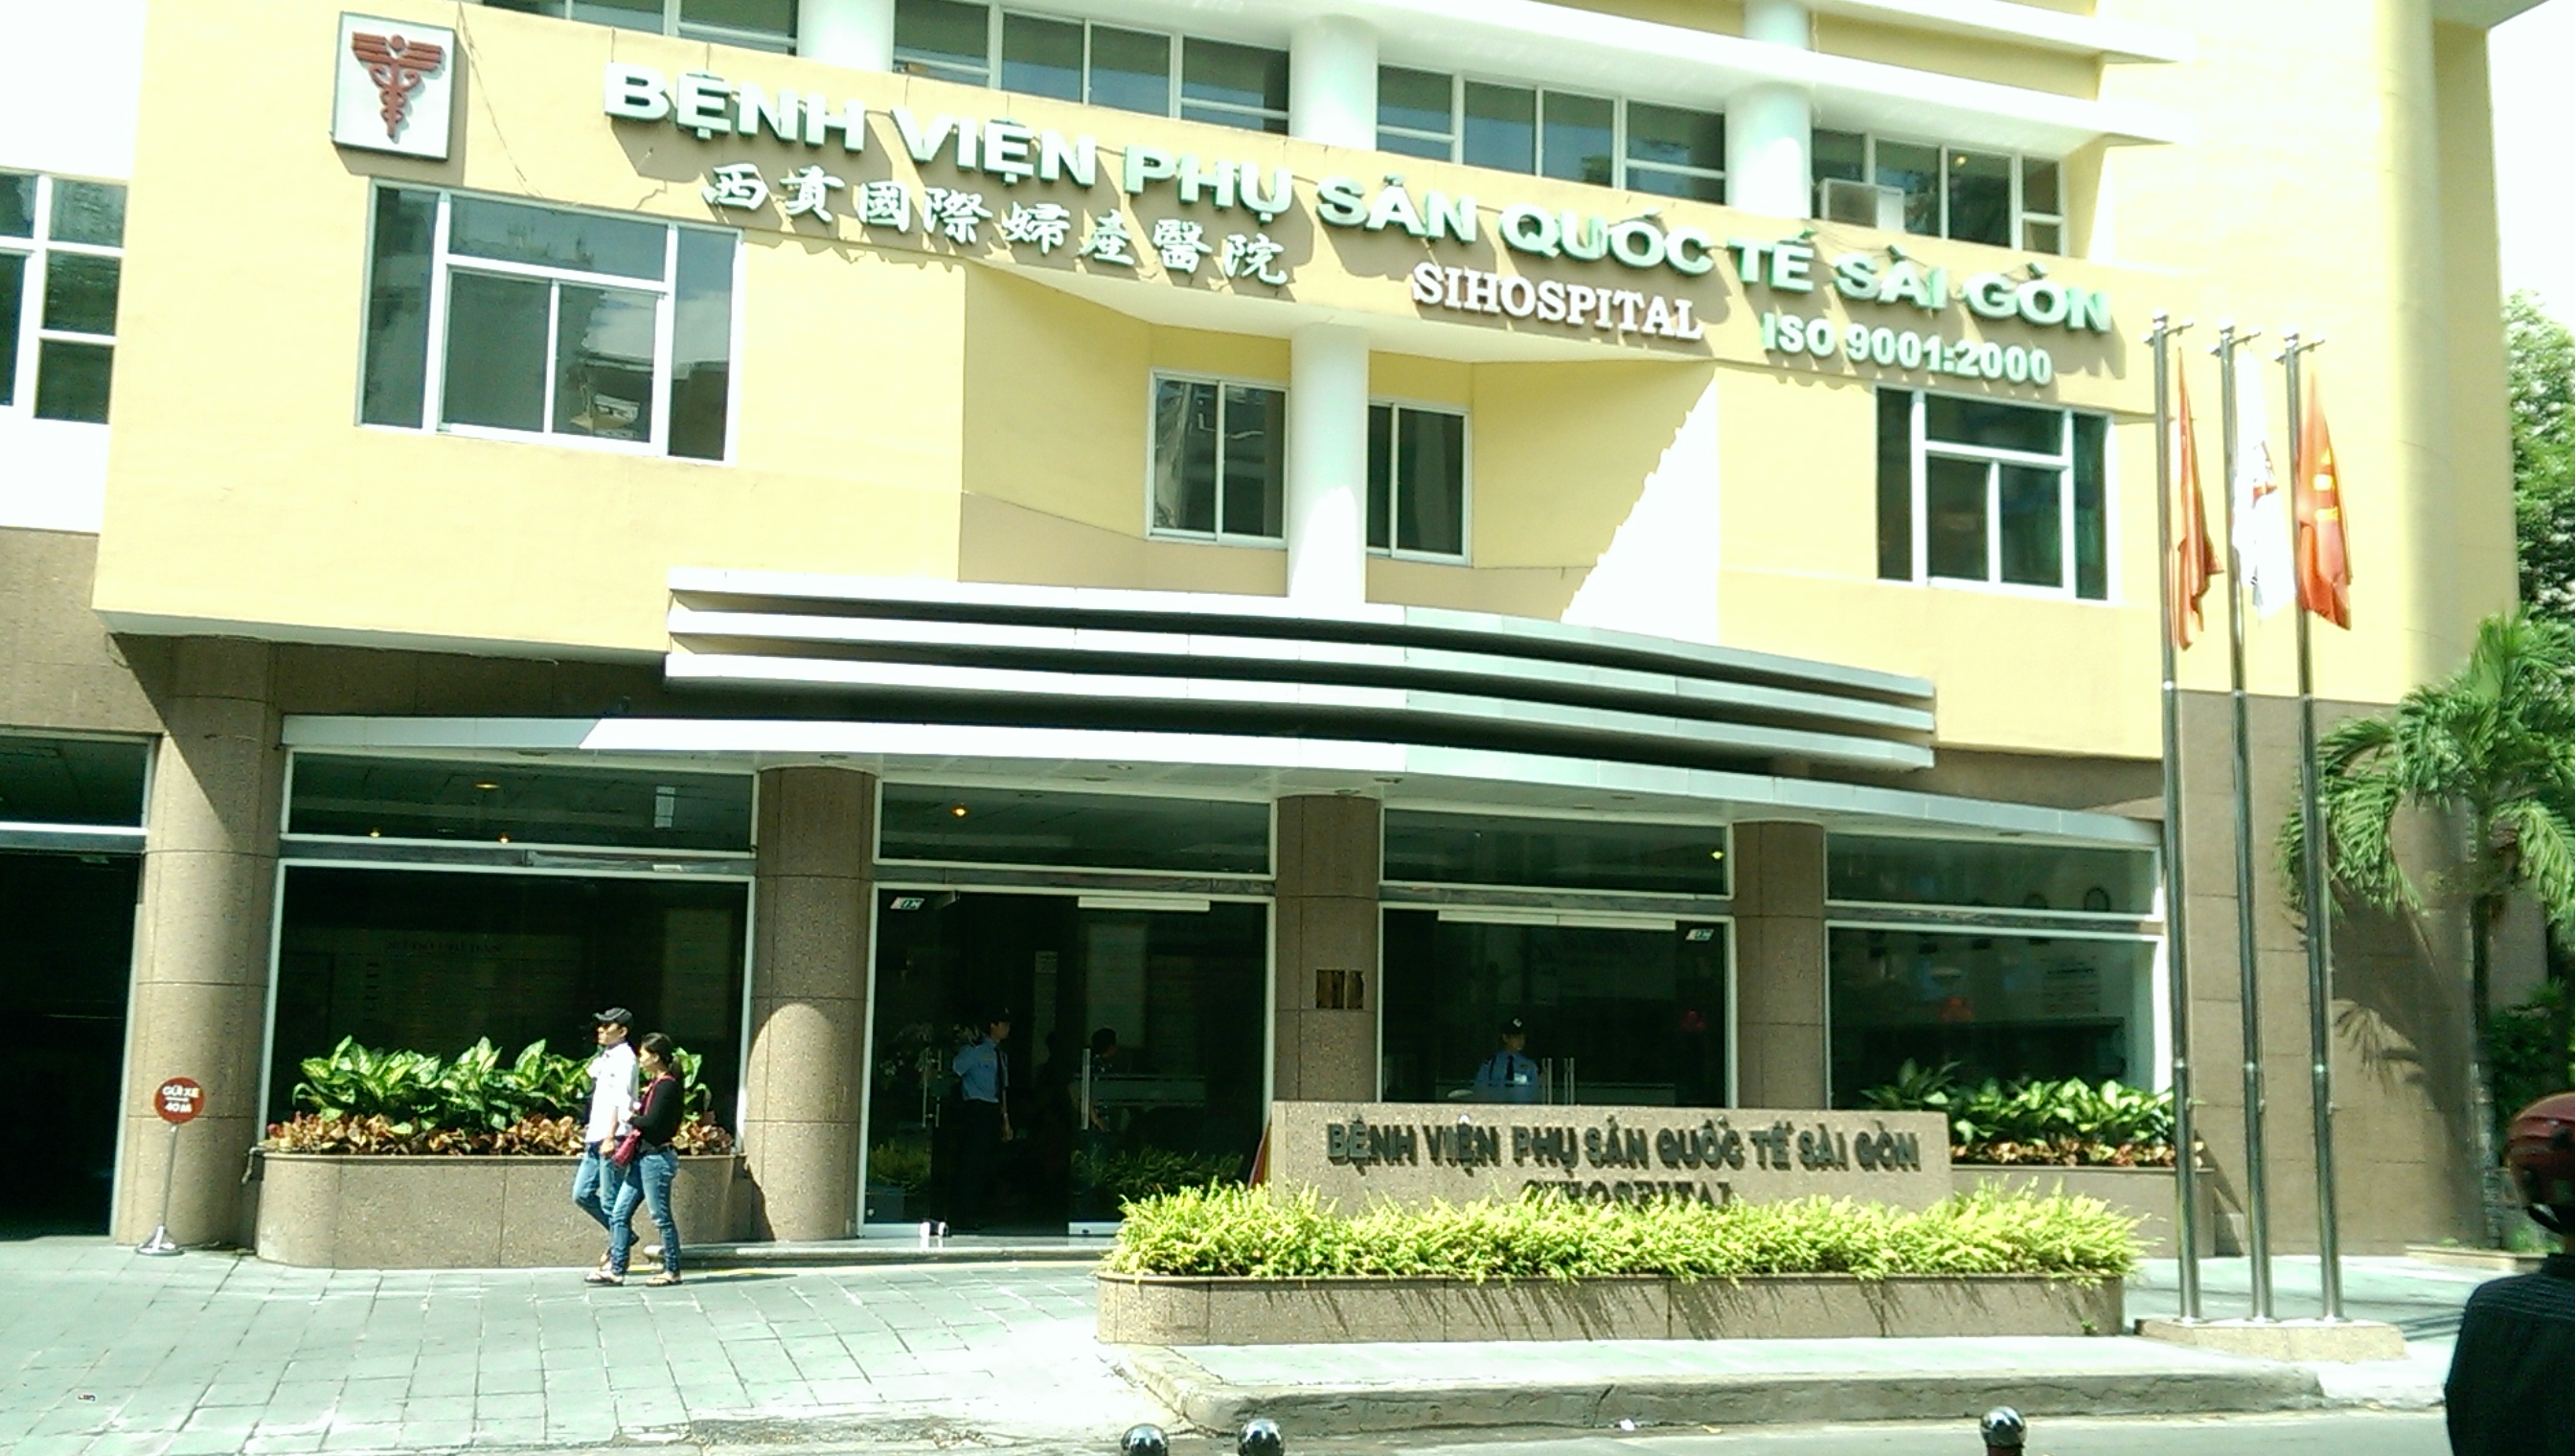 Khám phụ khoa ở TPHCM tại Bệnh viện Phụ sản Quốc tế Sài Gòn